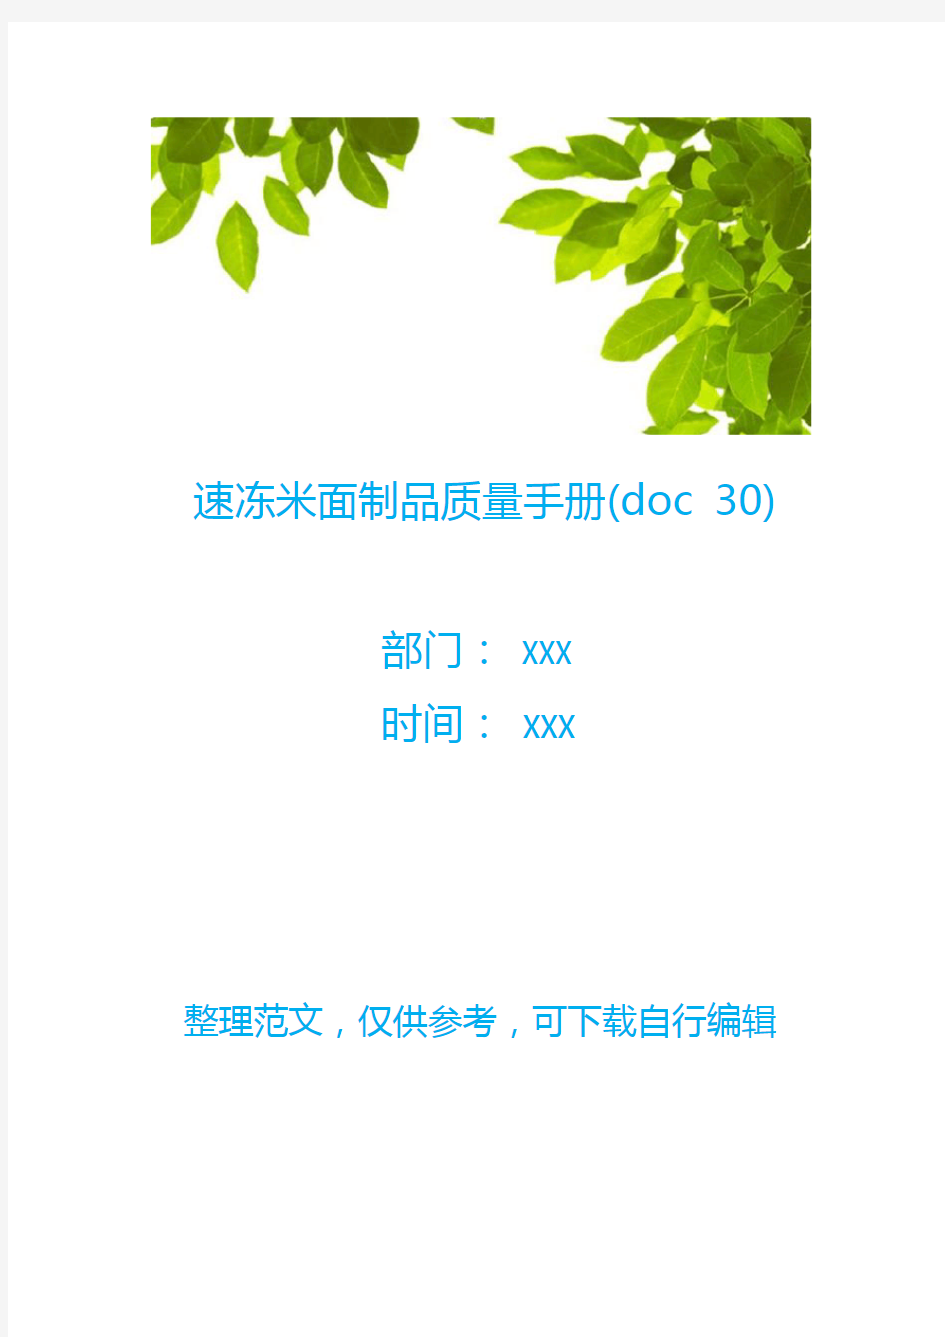 速冻米面制品质量手册(doc 30)